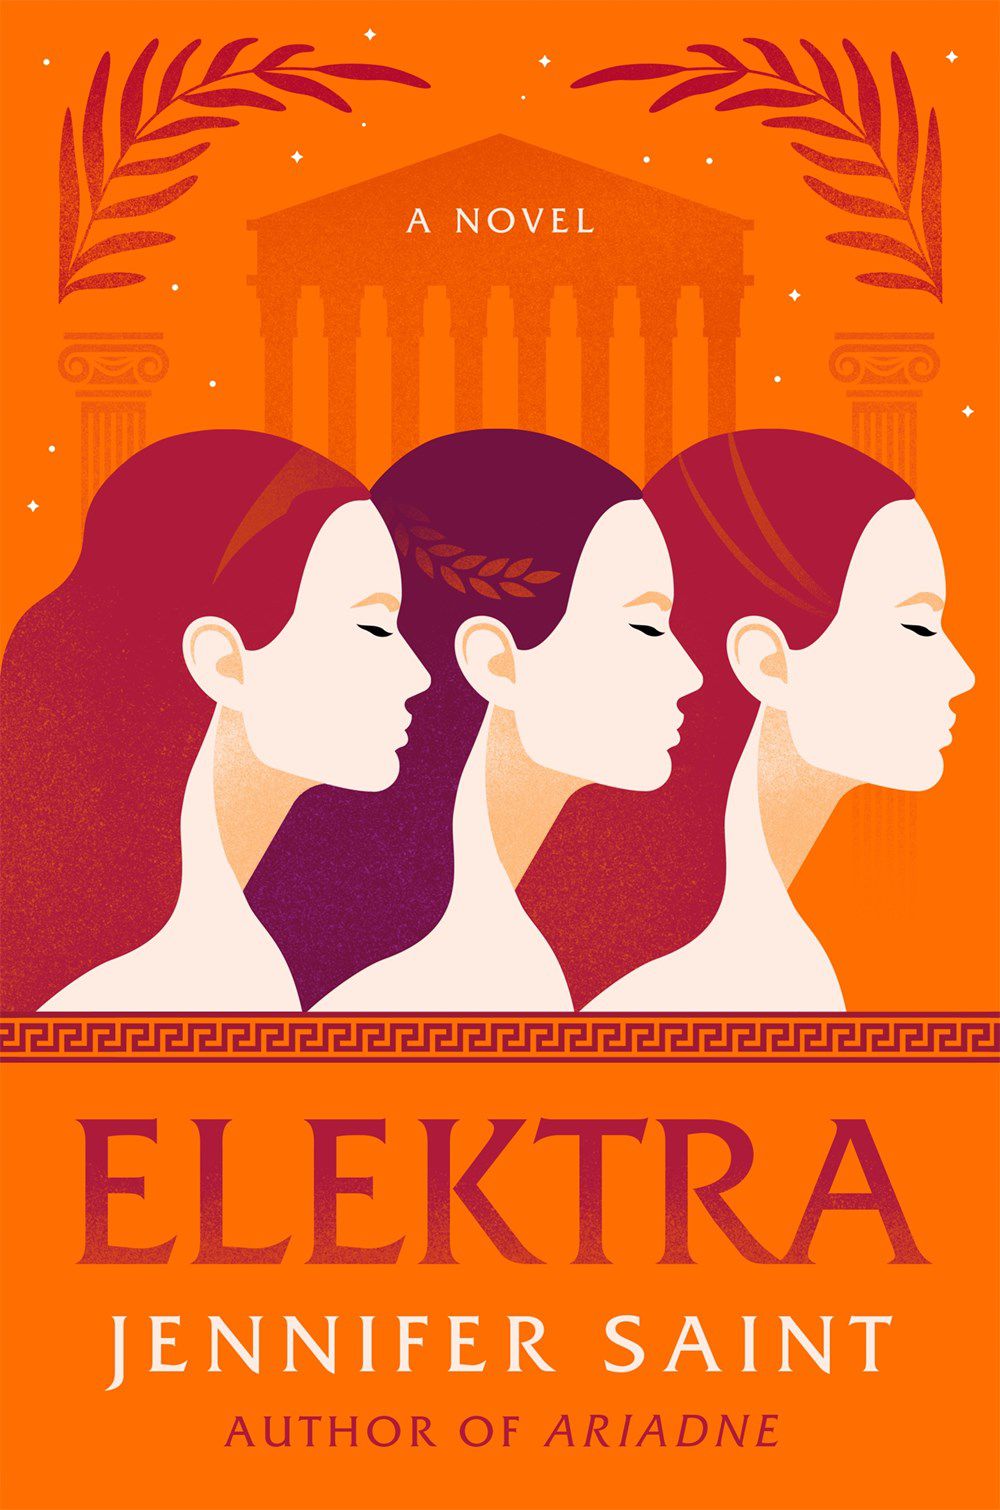 La copertina di Elektra di Jennifer Saint, con i profili di tre persone dai capelli lunghi su sfondo arancione.